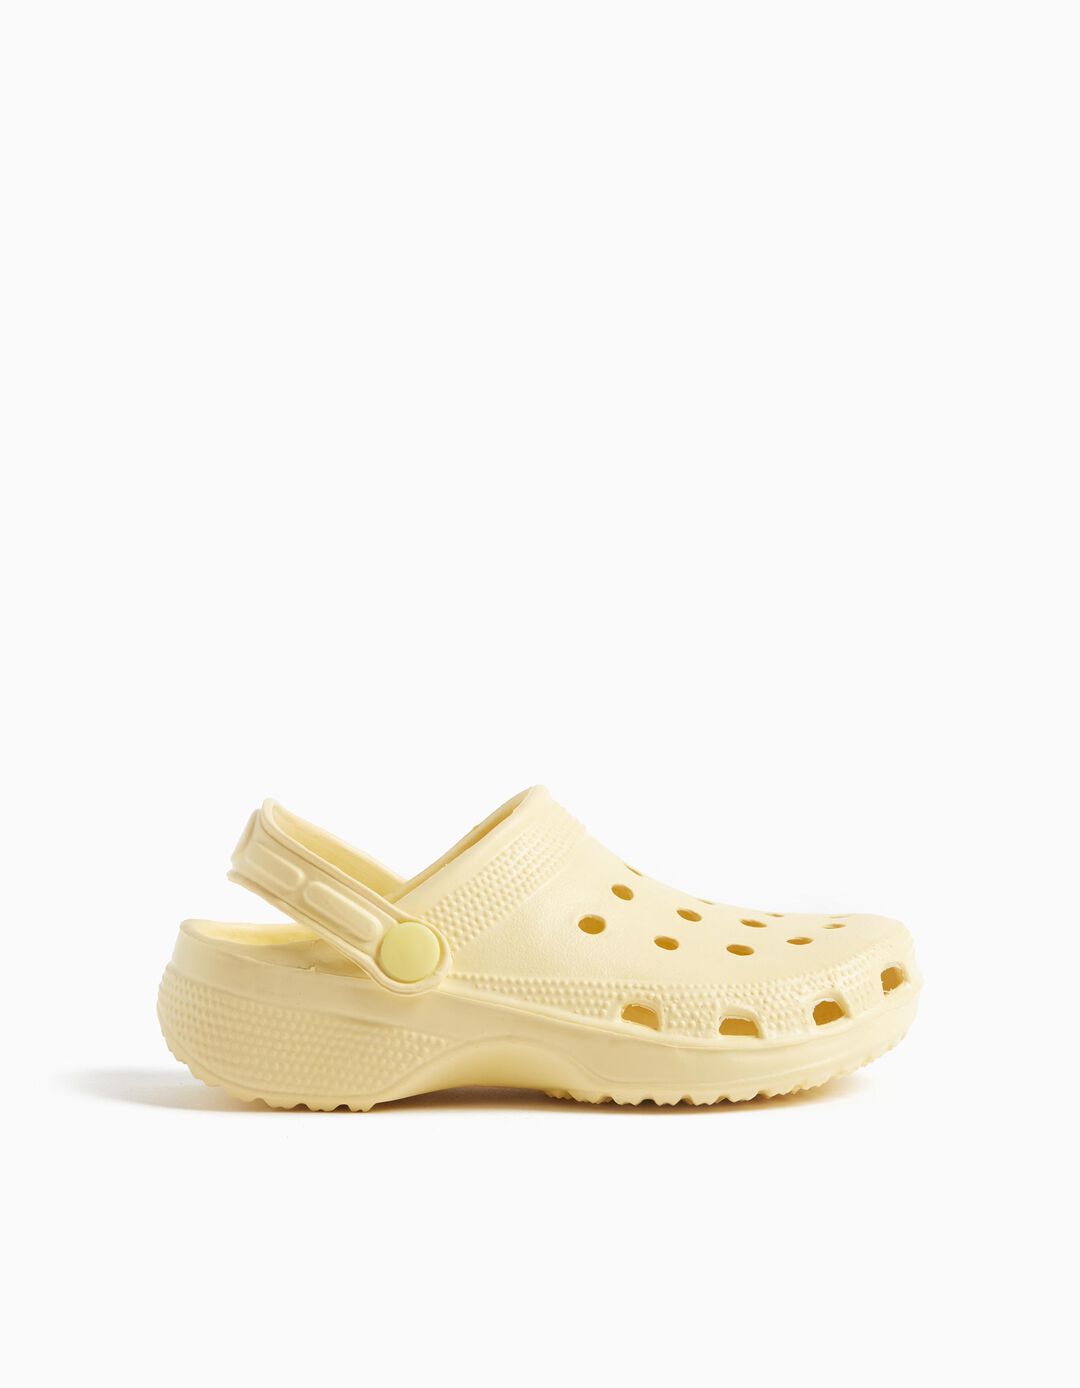 Clog Sandals, Girls, Light Yellow